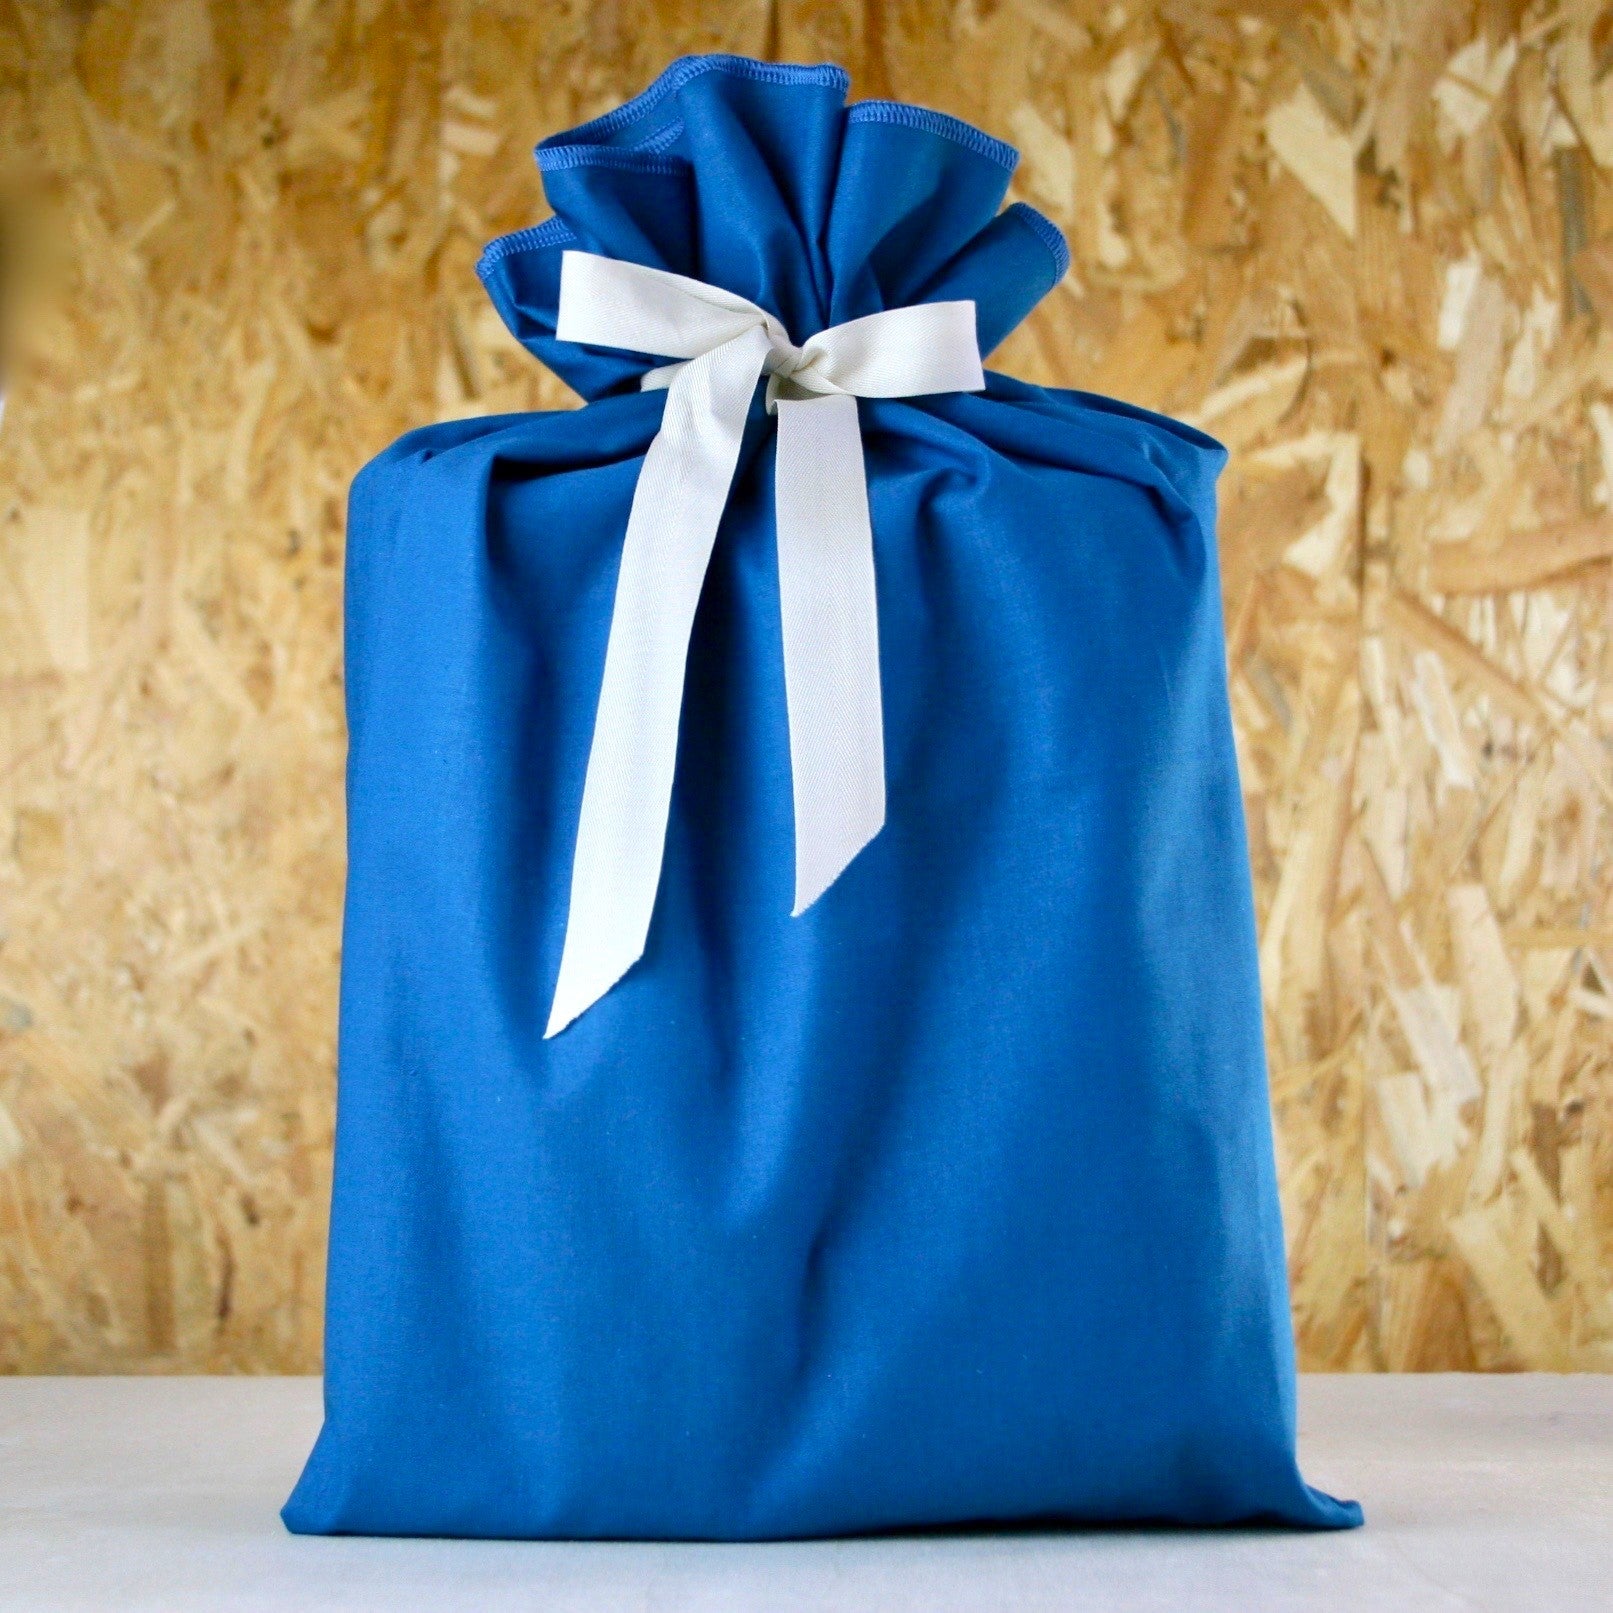 Kit emballage cadeau réutilisable - La carte française